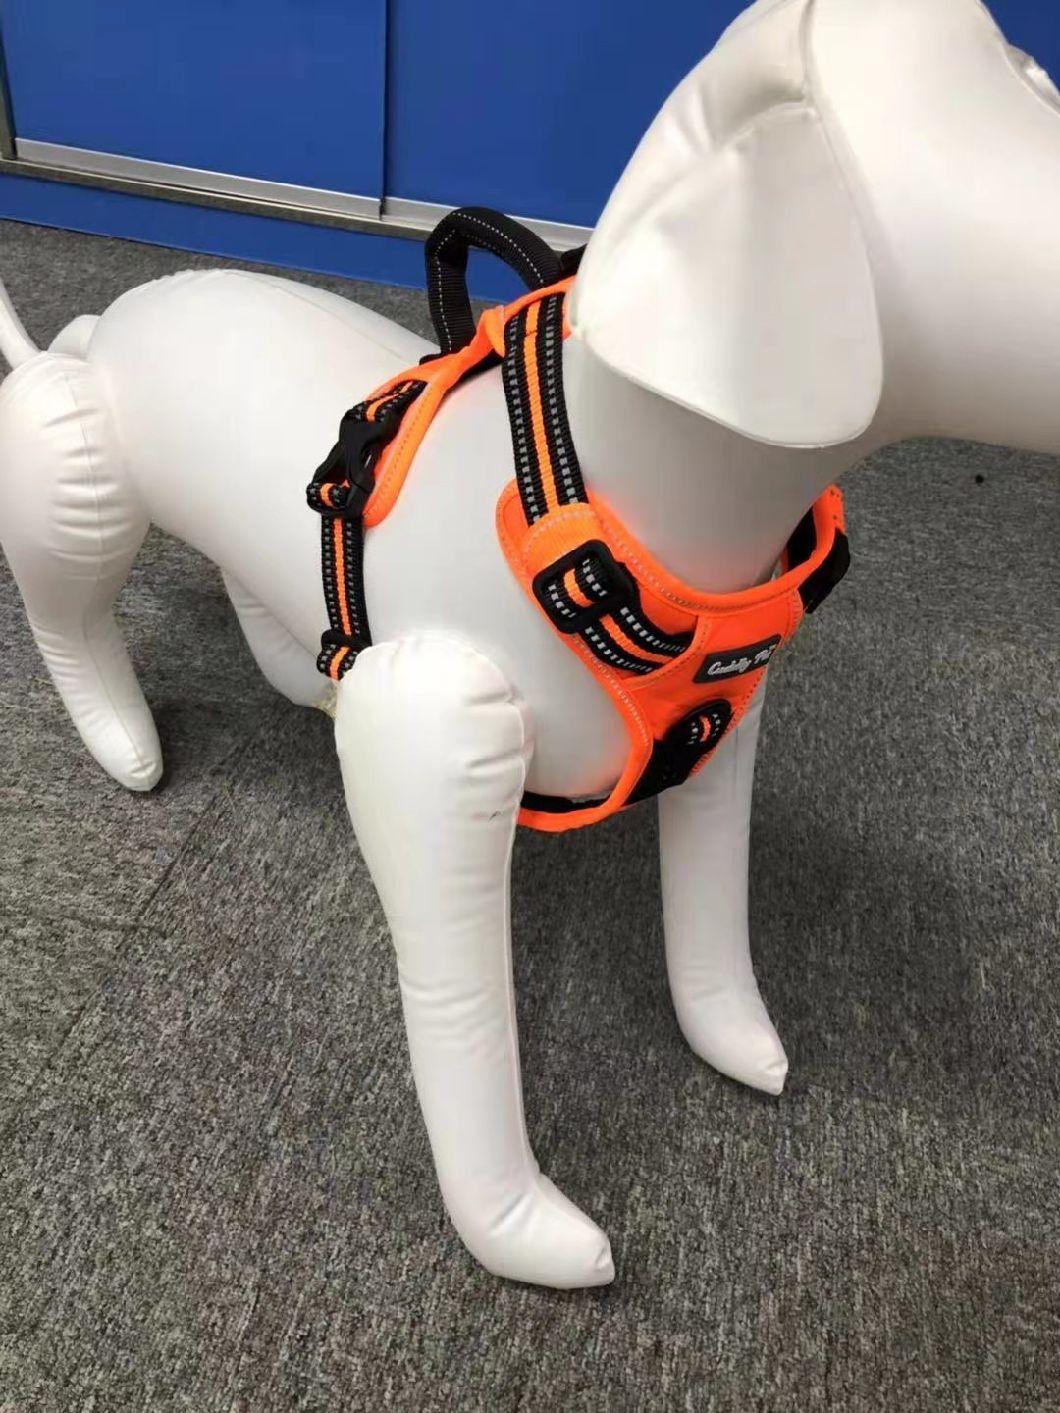 OEM Full Sets Small Order Adjustable Dog Harness